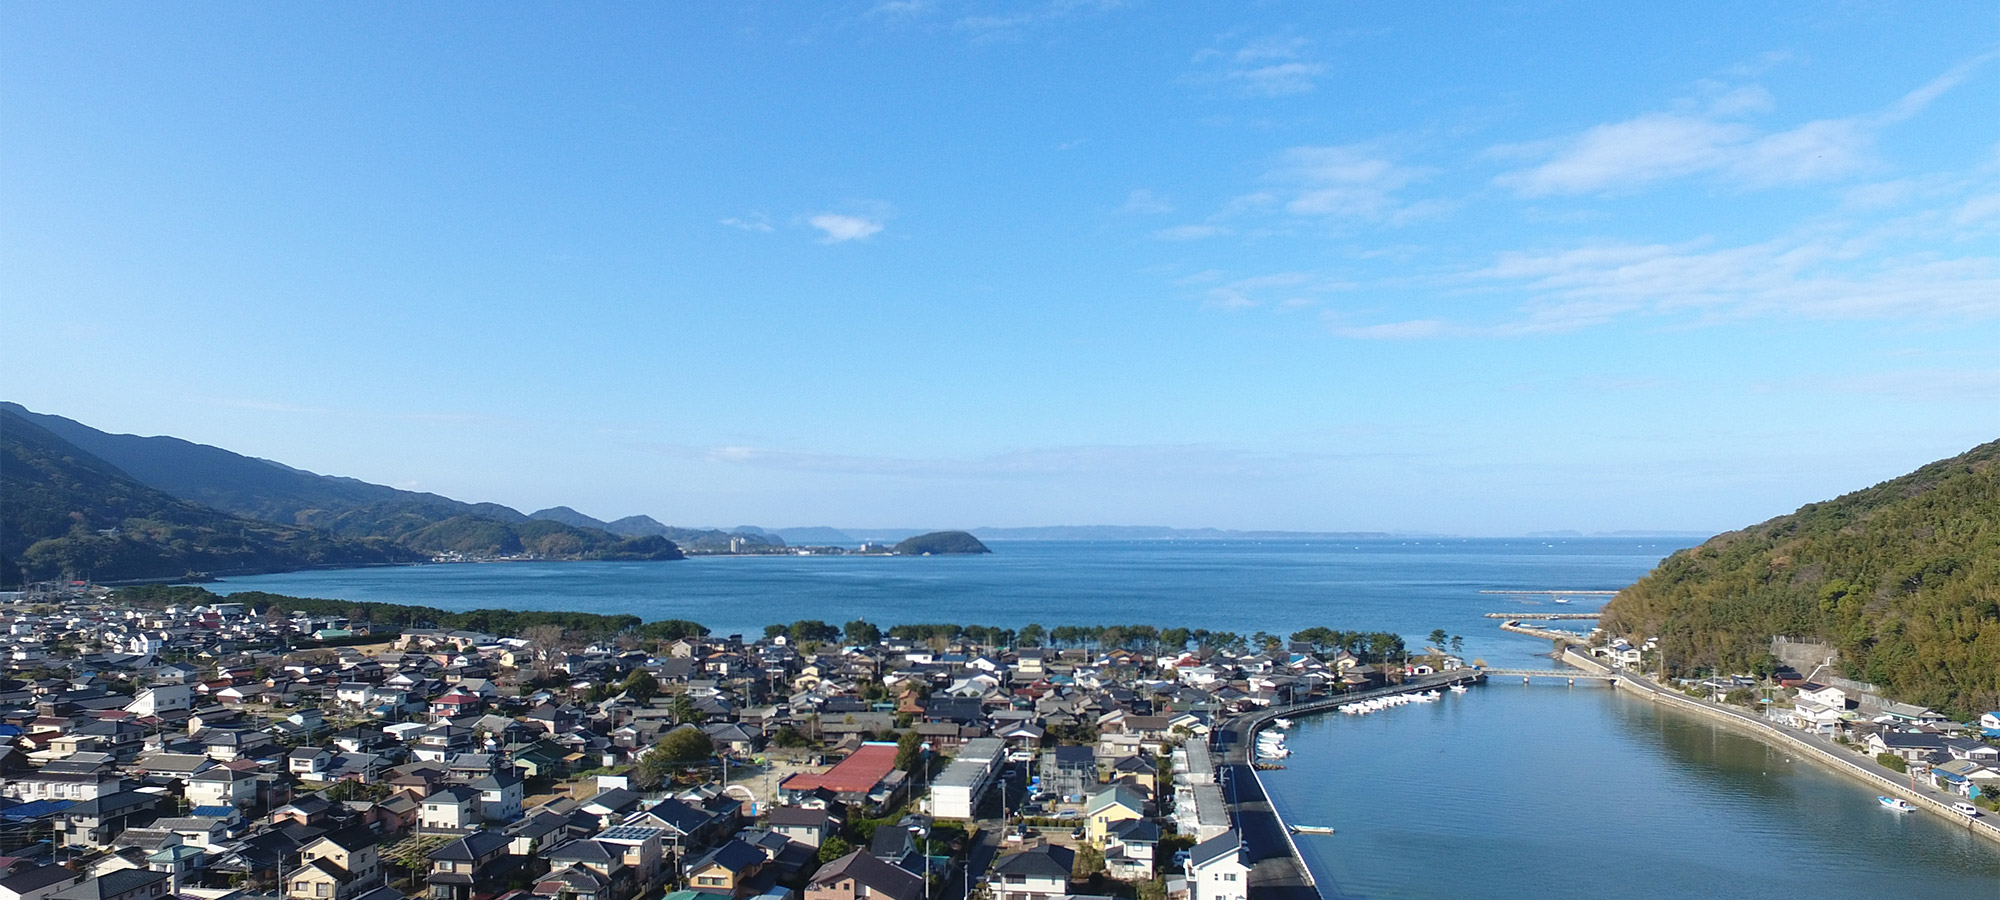 きららの湯は、ラドンを含む糸島唯一の天然温泉です。